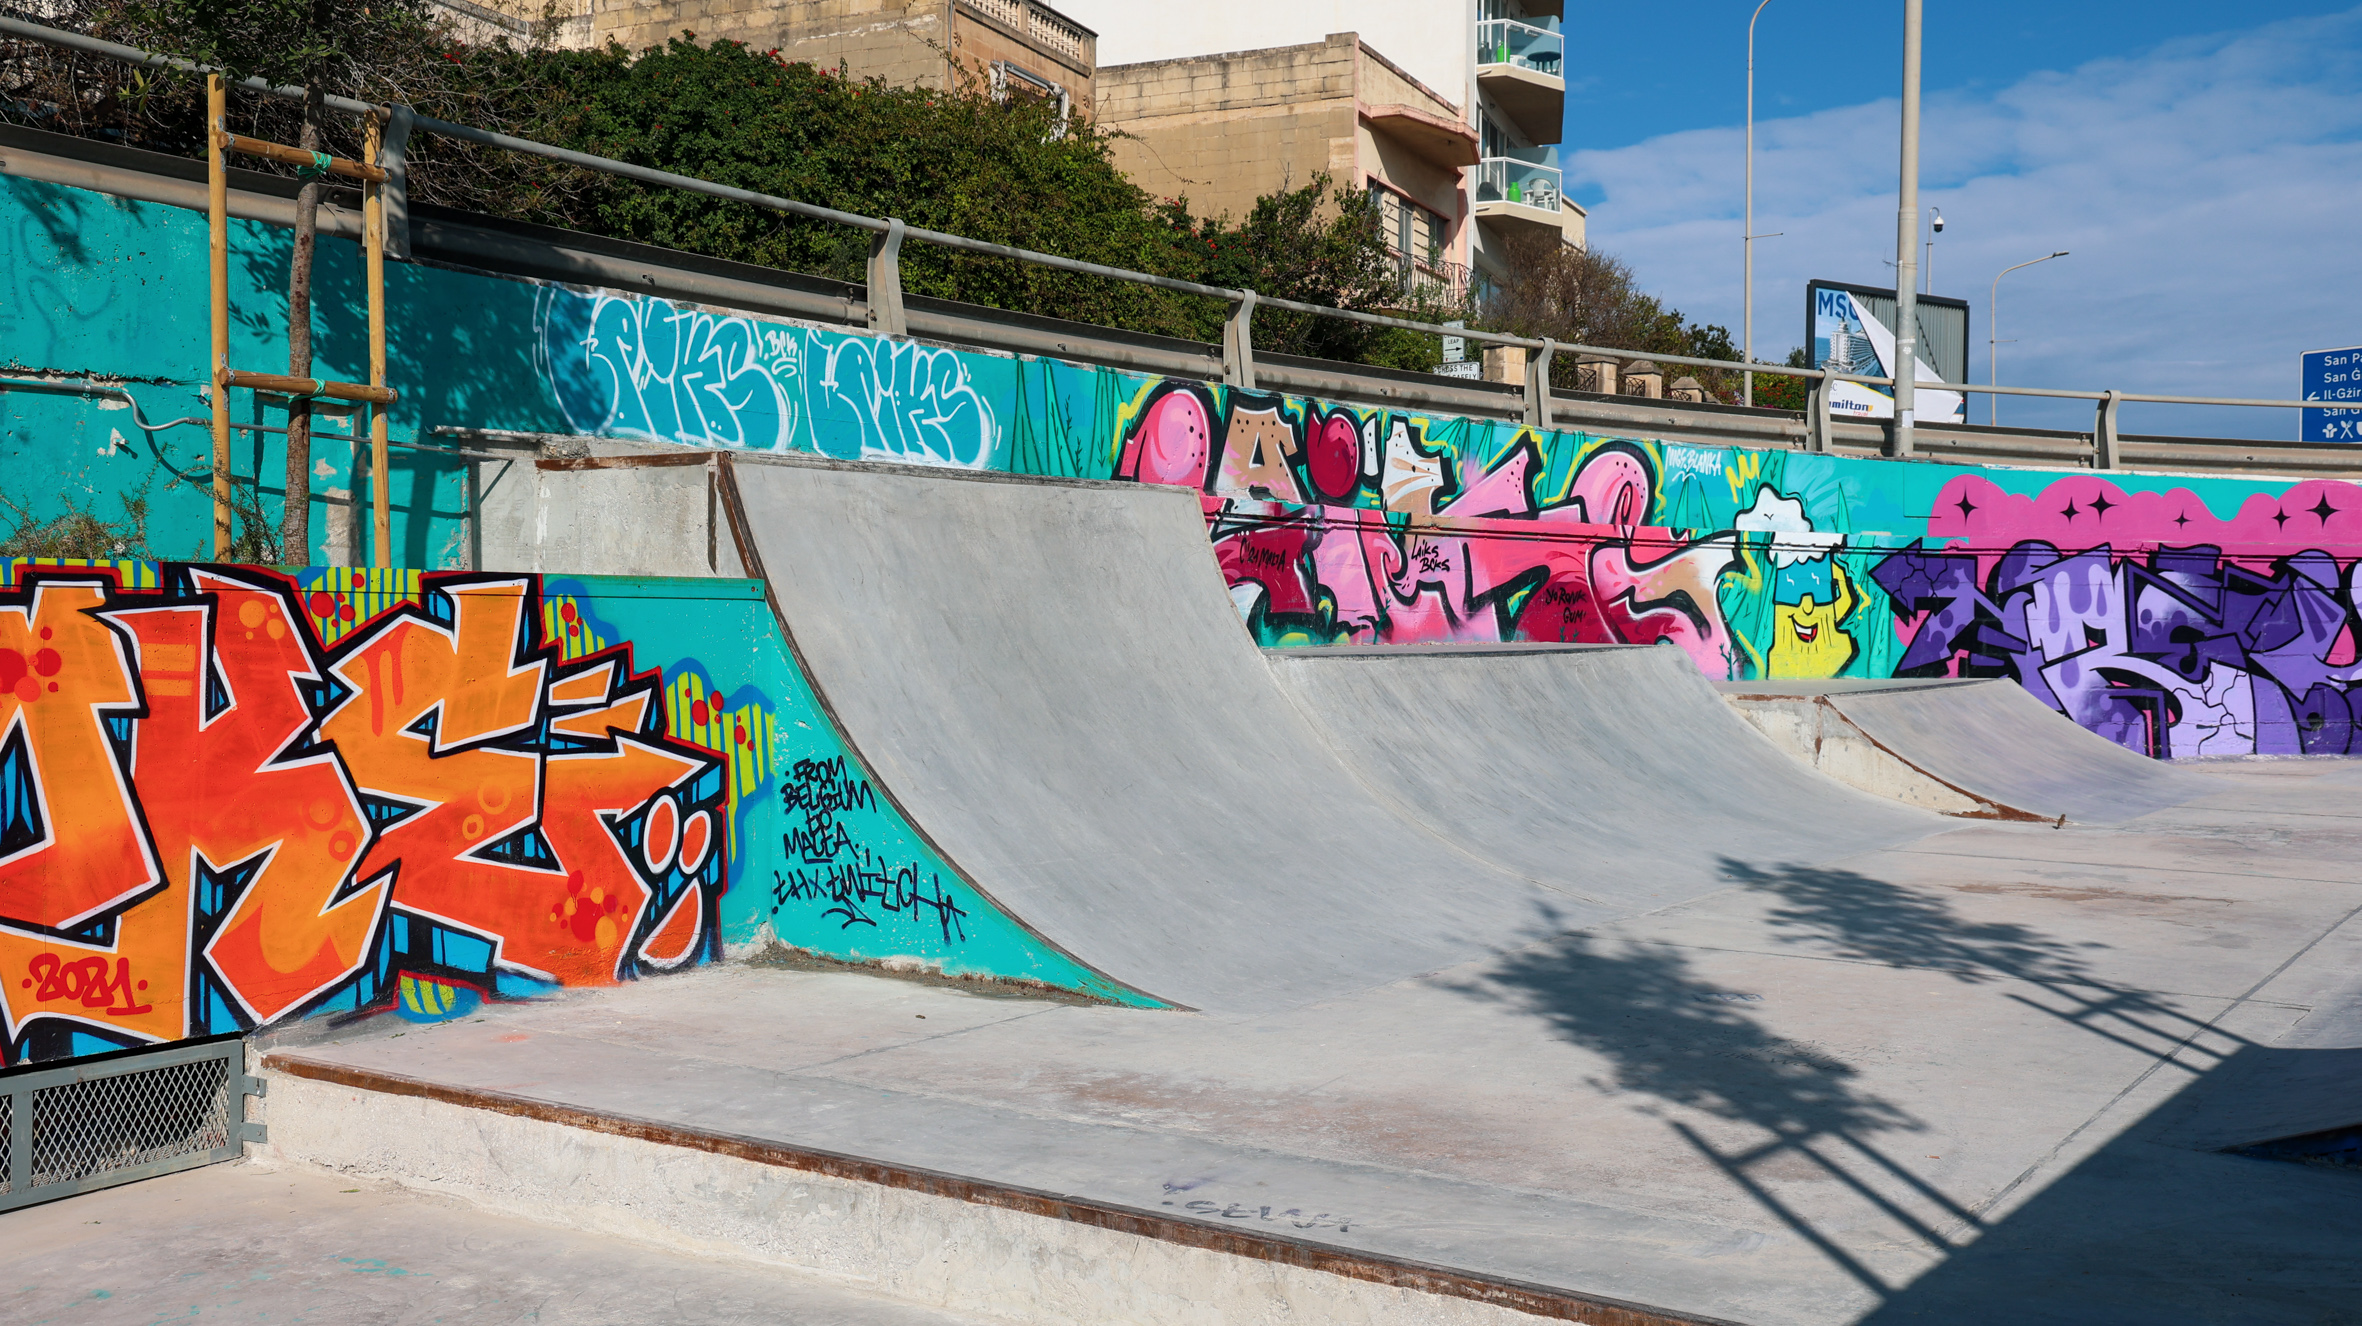 Infrastructure Malta renovates Msida Skatepark